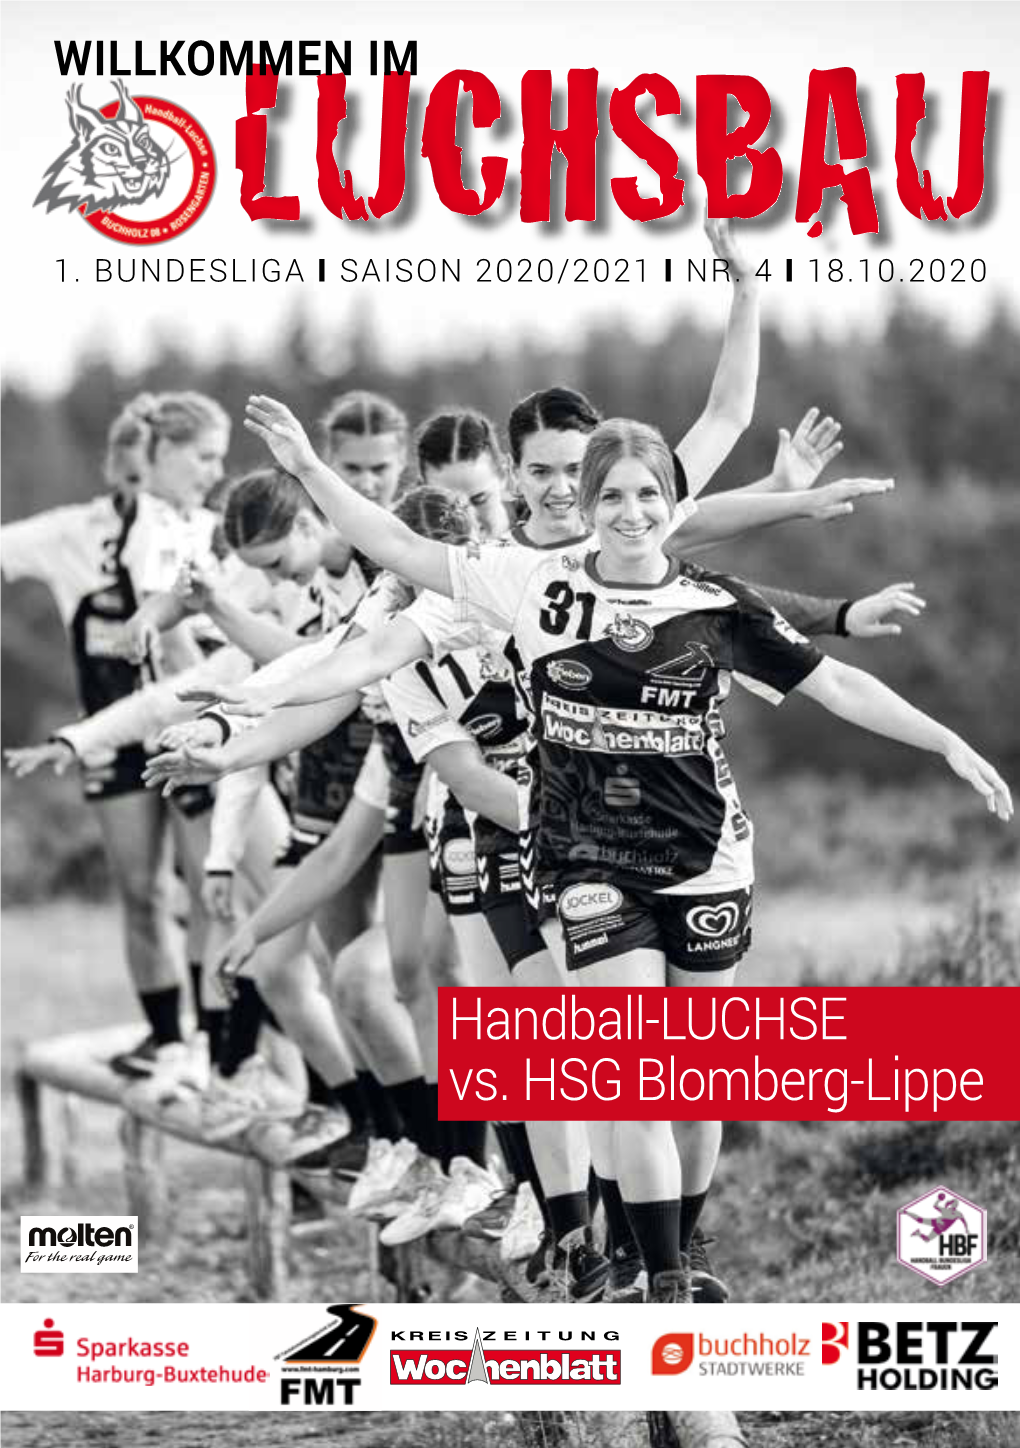 Handball-LUCHSE Vs. HSG Blomberg-Lippe 3 I Willkommen Im LUCHSBAU